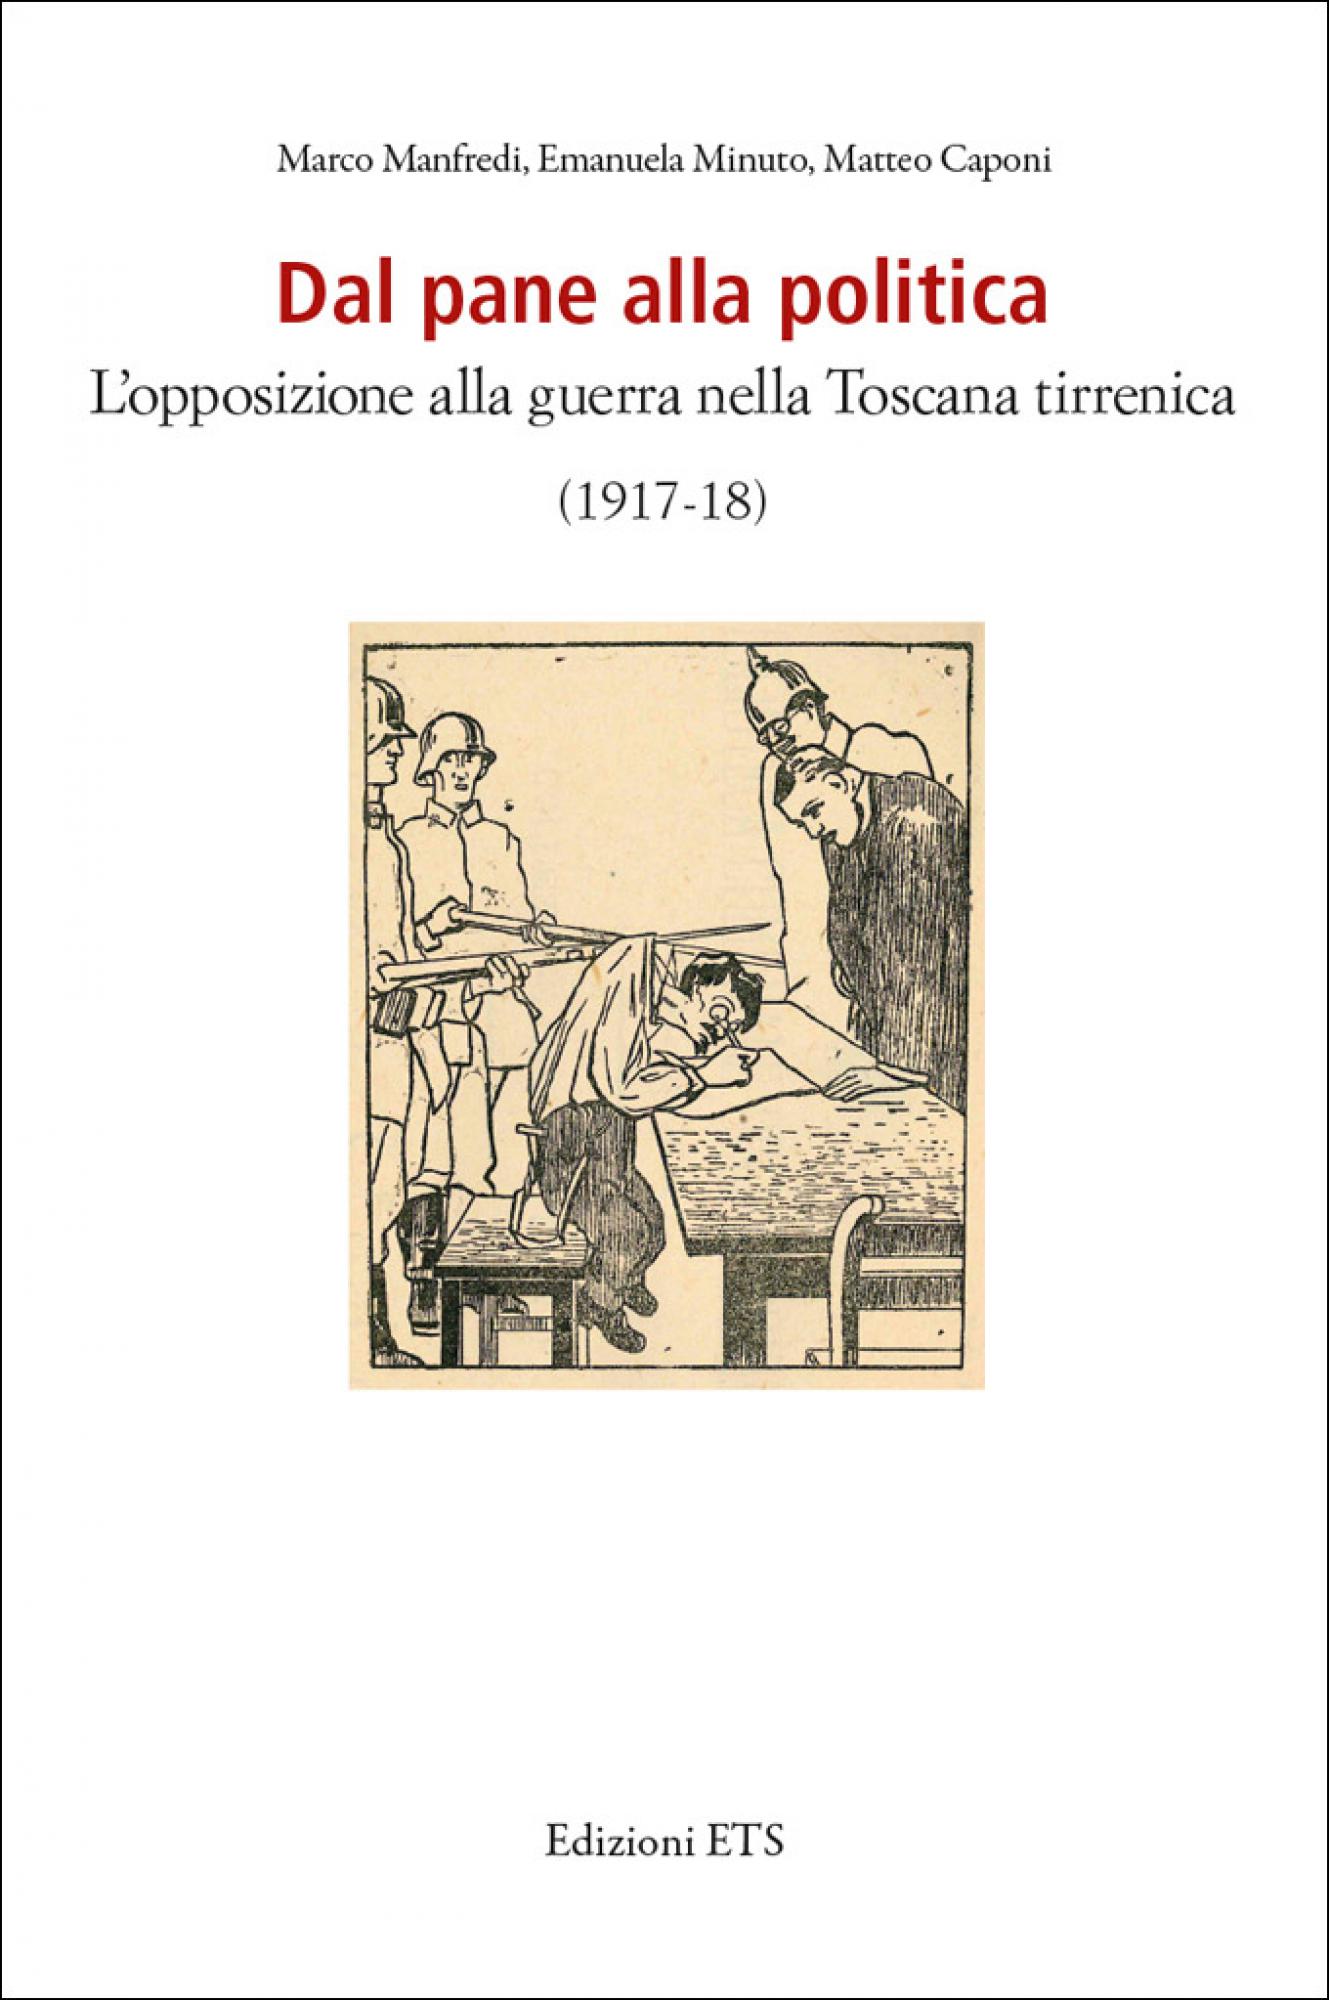 Dal pane alla politica.L’opposizione alla guerra nella Toscana tirrenica (1917-18)